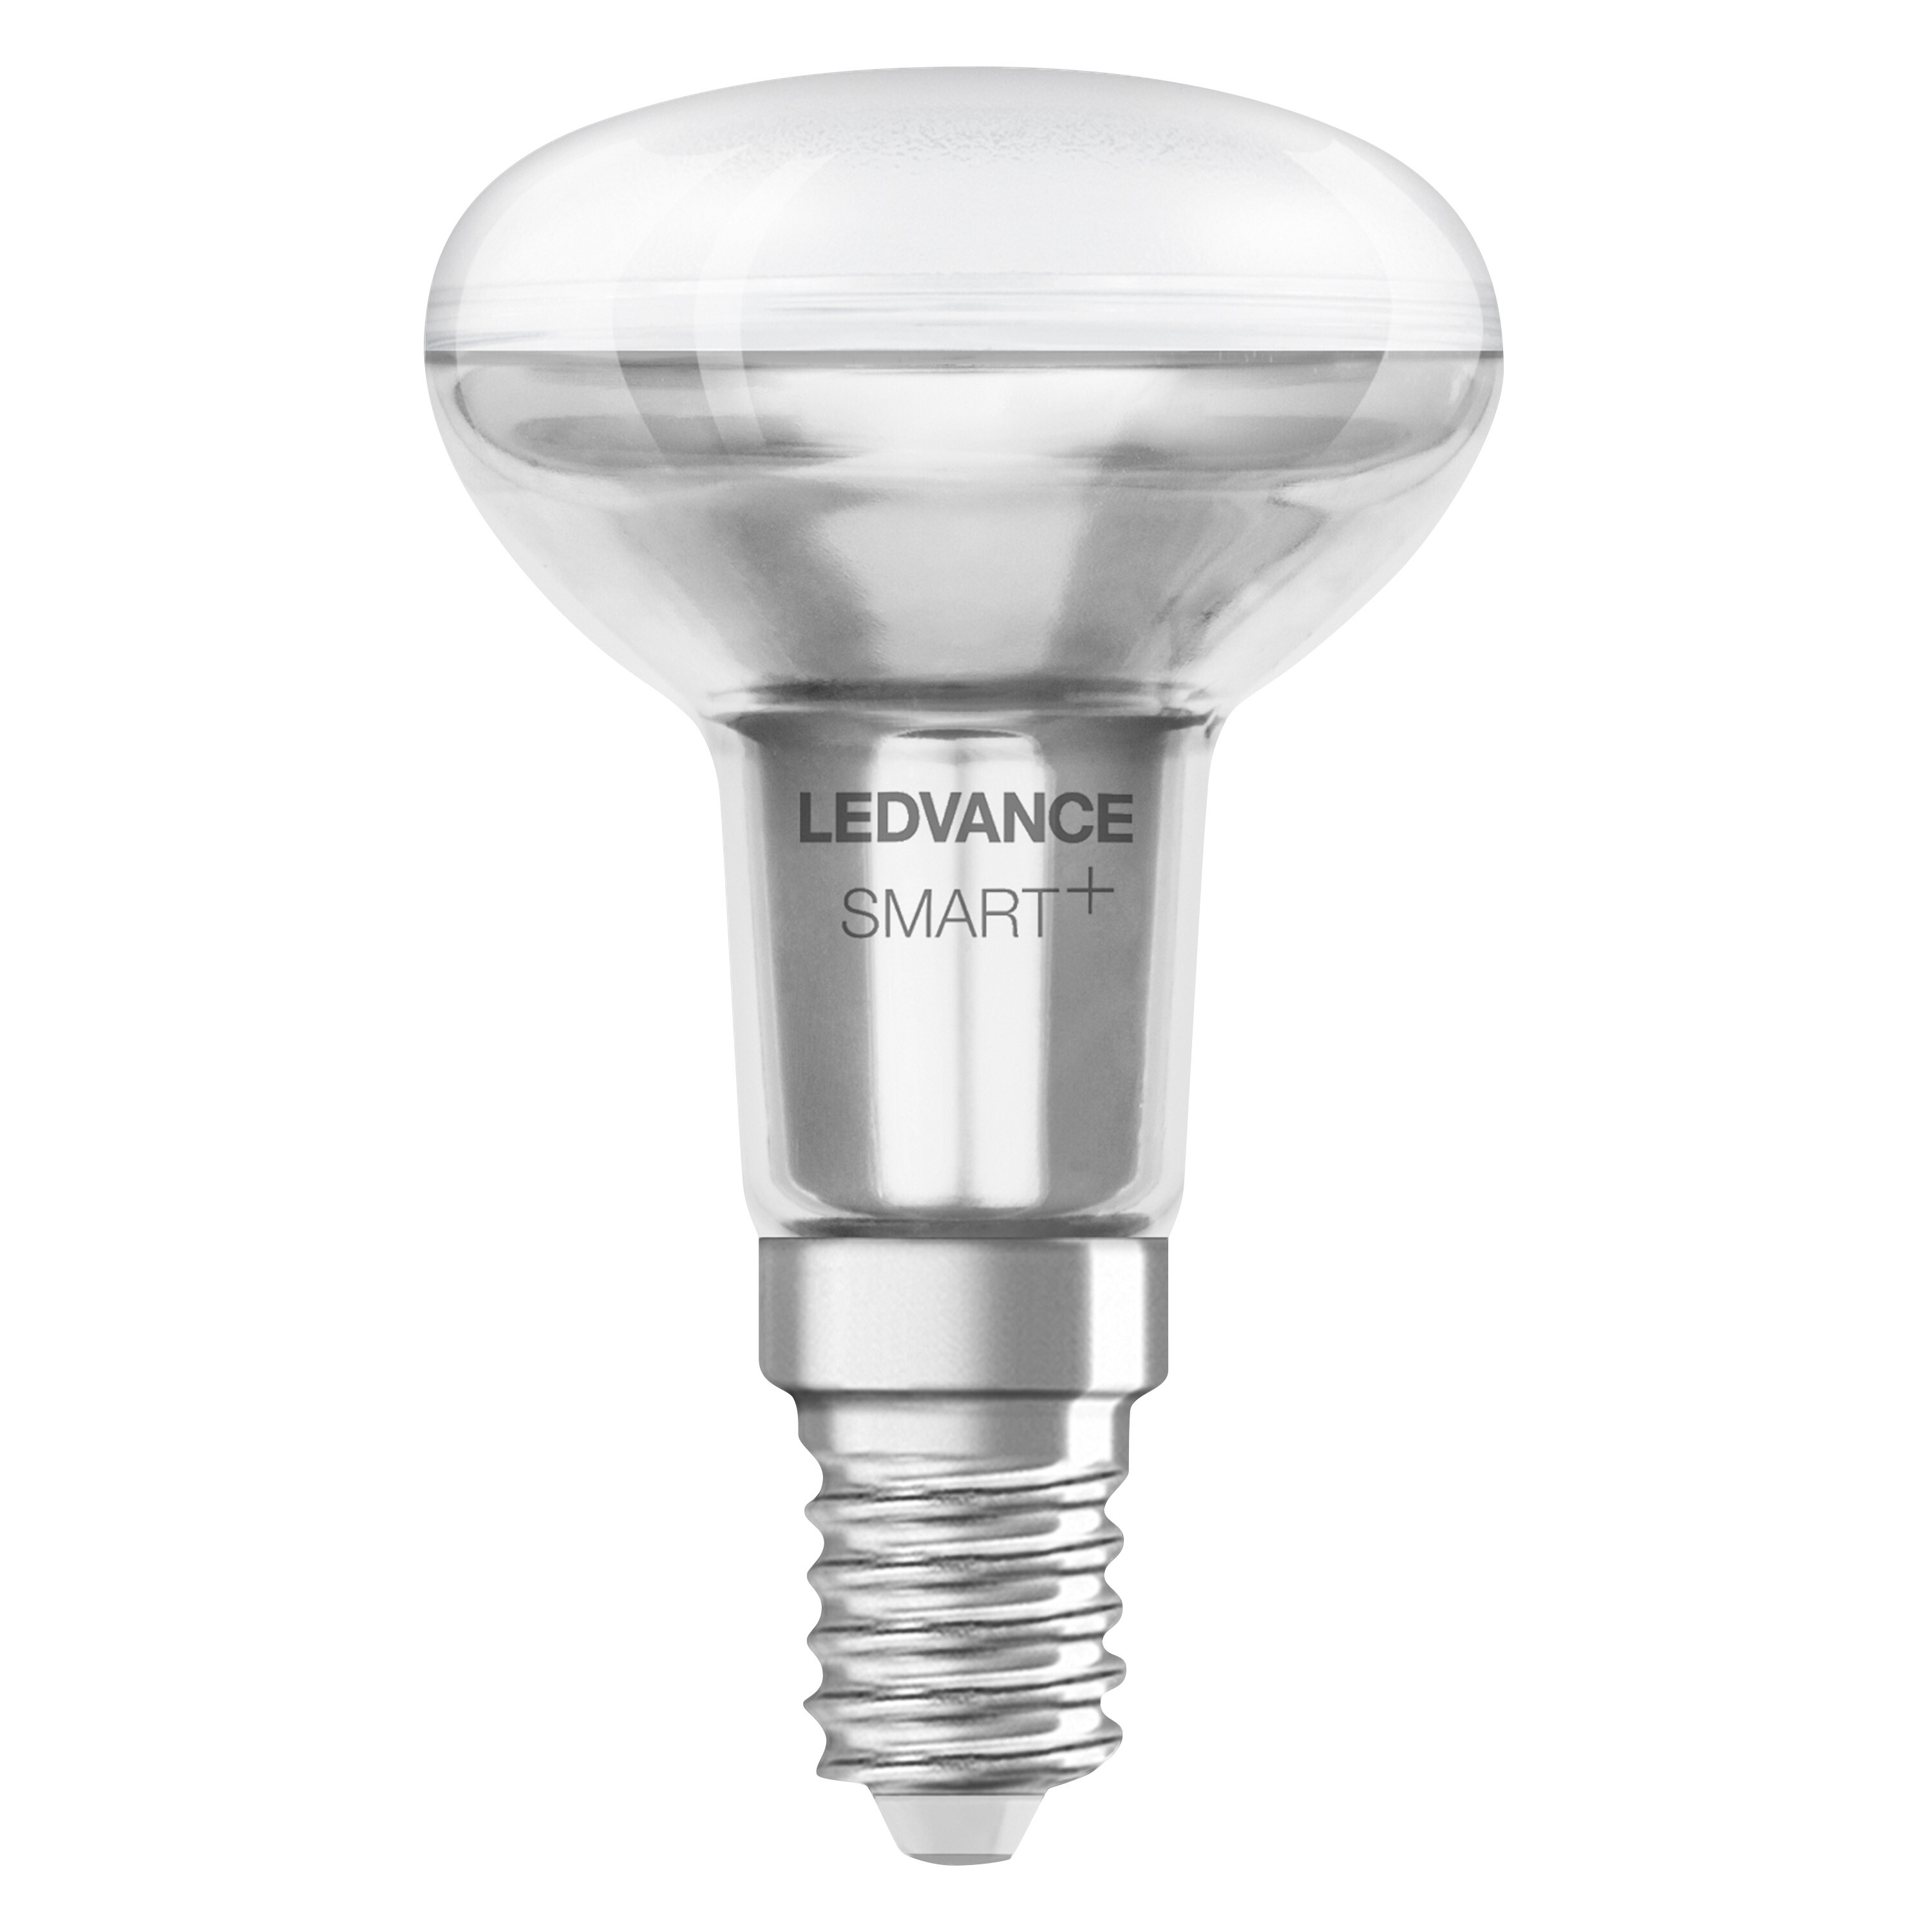 LEDVANCE SMART+ SPOT CONCENTRA R50 LED 40 3W Multicolor E14 änderbar Lampe Lichtfarbe Multicolor